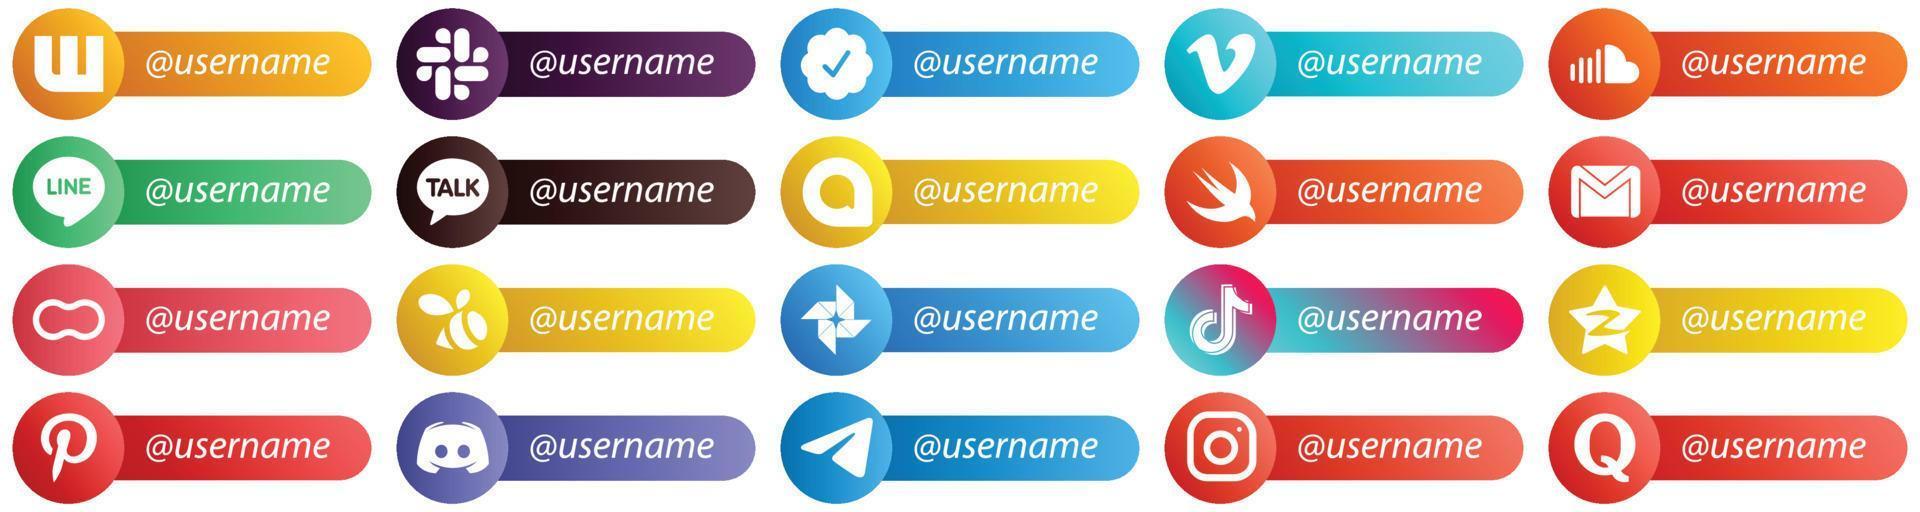 iconos de estilo de tarjeta para redes sociales populares con paquete de 20 nombres de usuario, como mujeres. maní. línea. iconos de correo y gmail. completamente editable y único vector